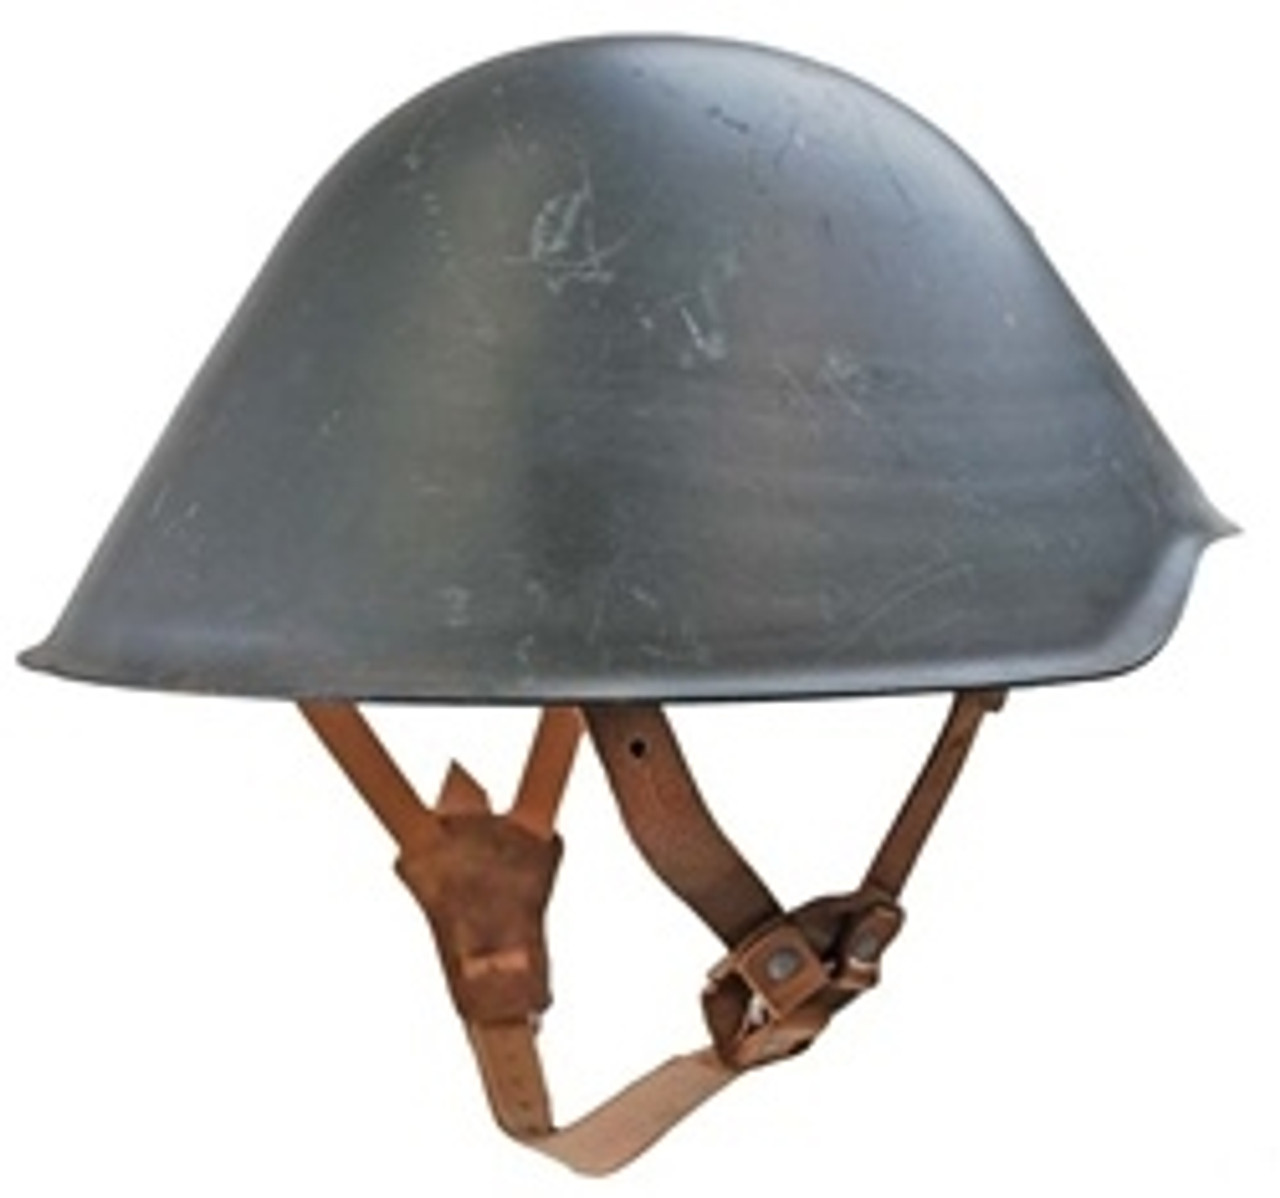 East German Steel Helmet - Used from Hessen Antique